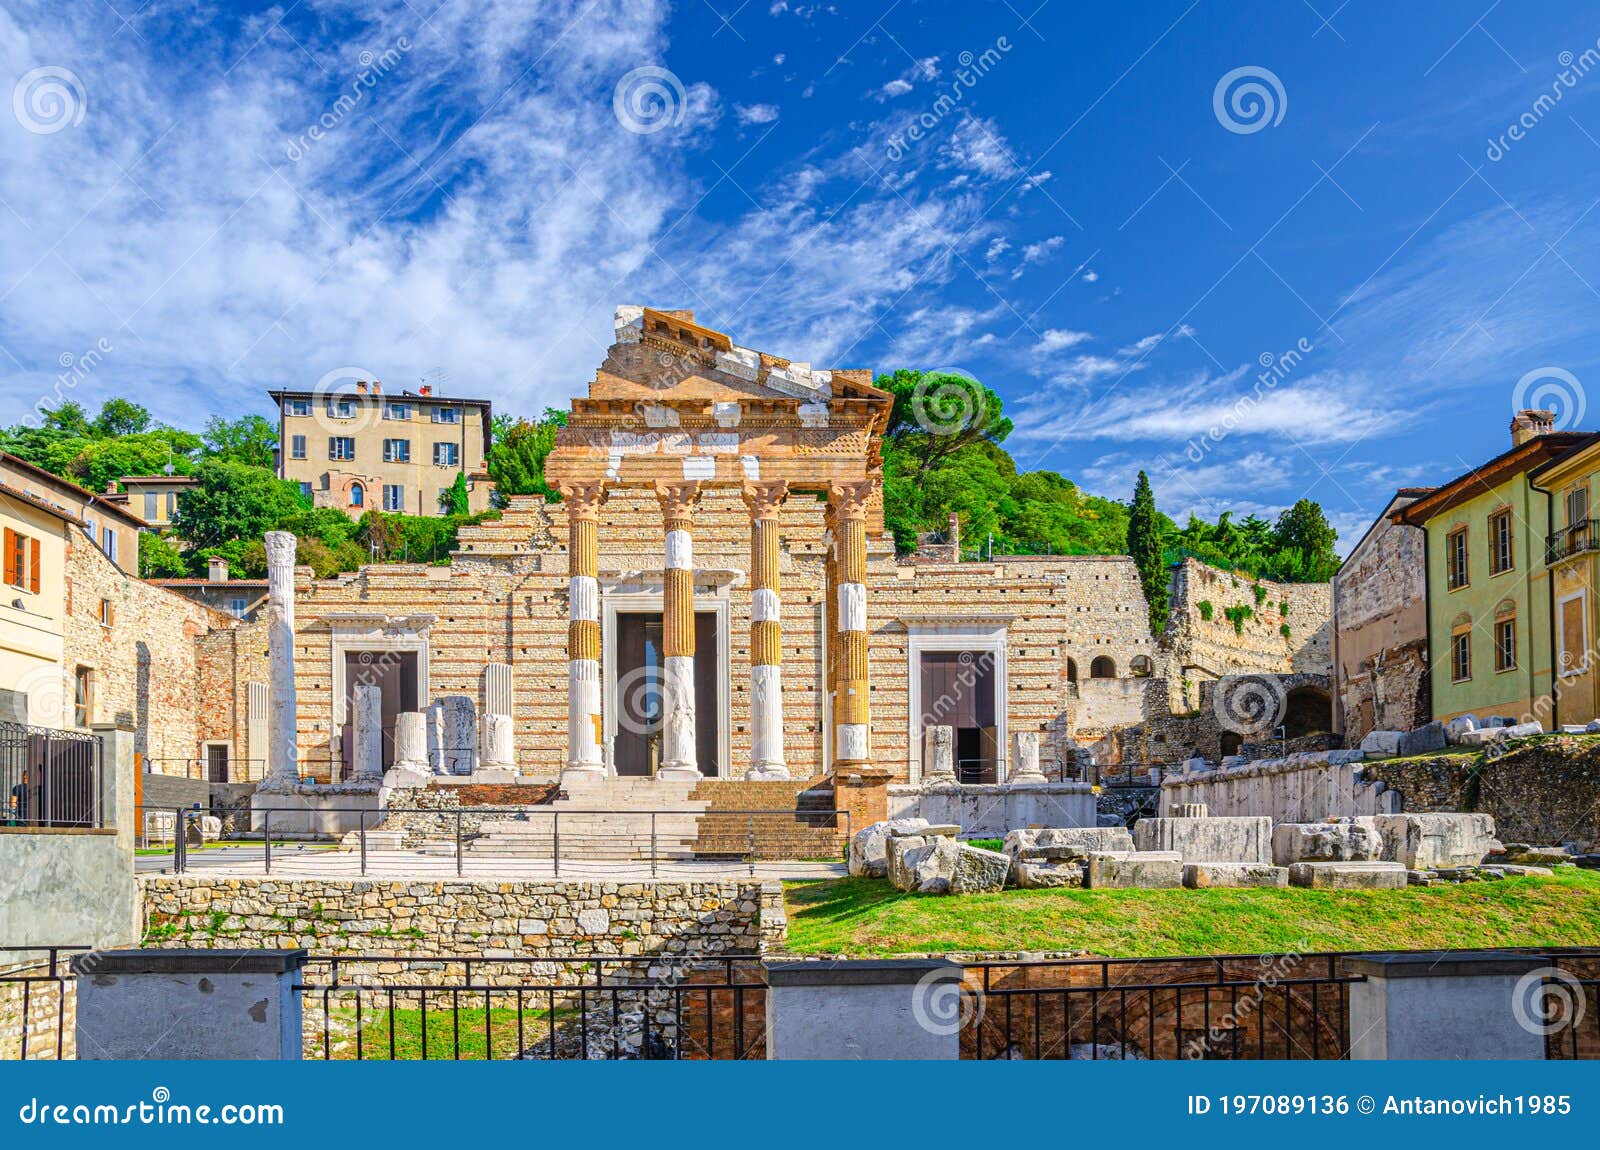 capitolium of brixia or temple of capitoline triad or tempio capitolino ruins and santuario repubblicano, brescia